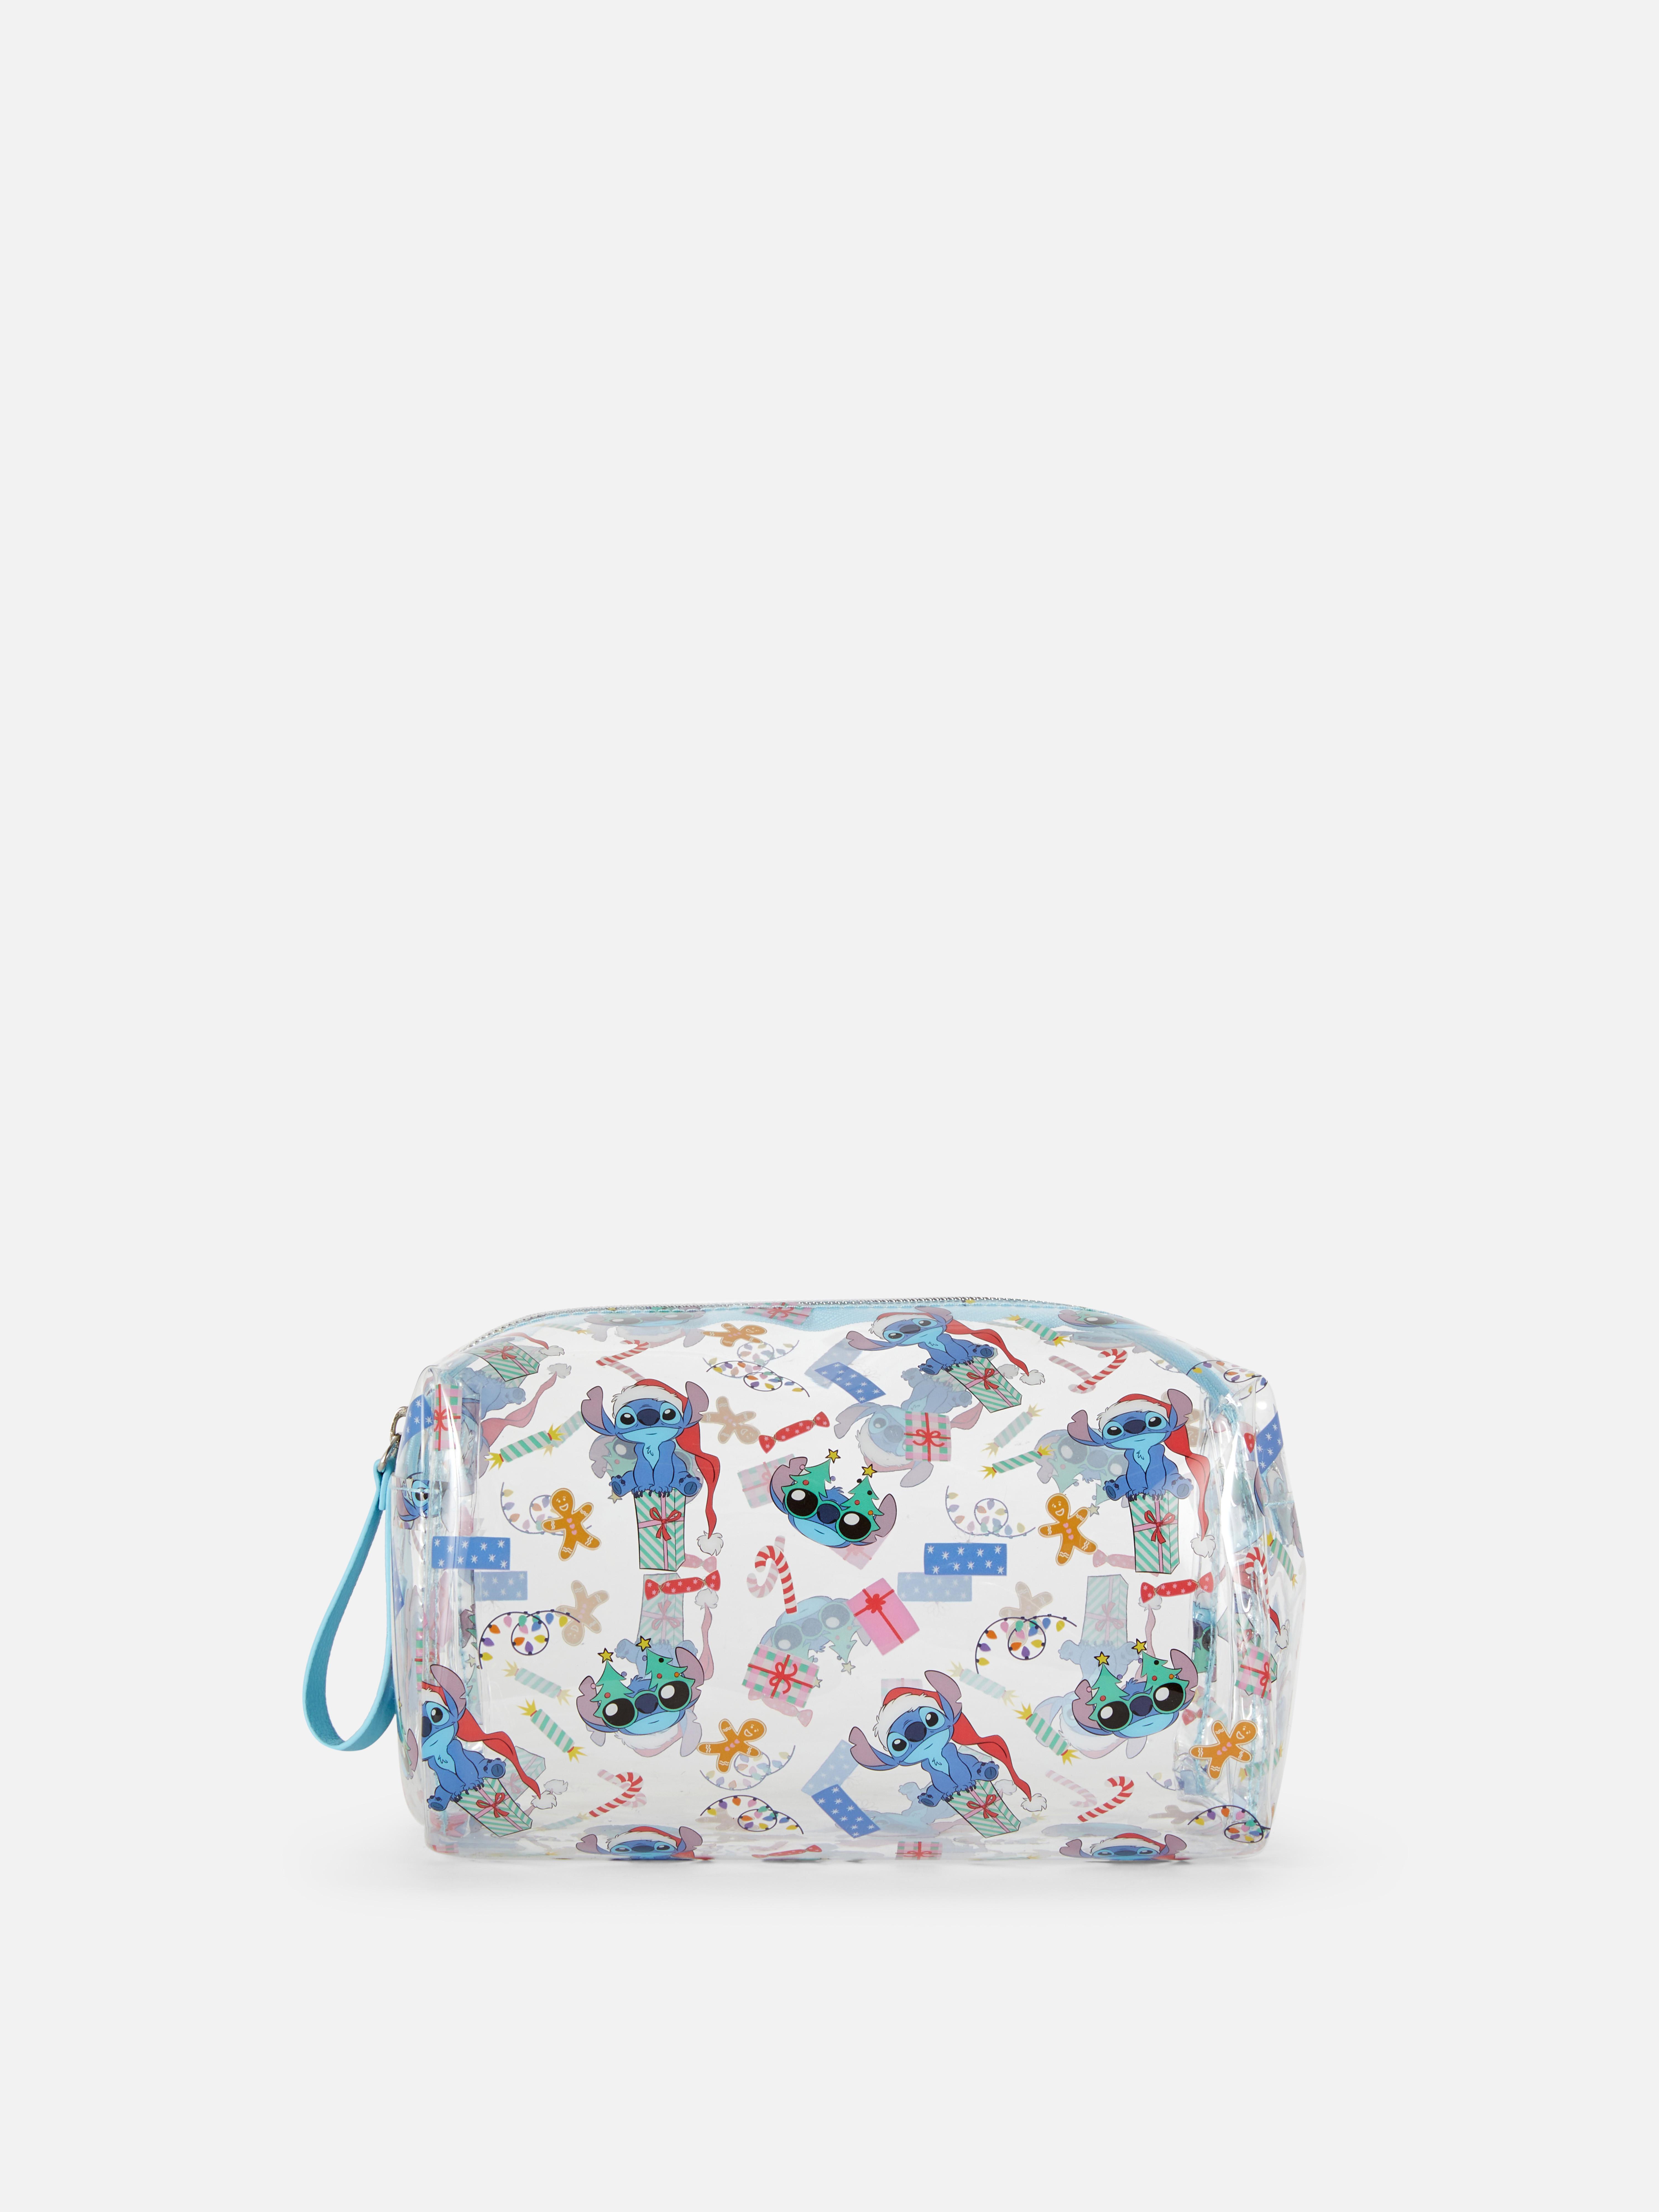 Disney's Lilo & Stitch Christmas Makeup Bag